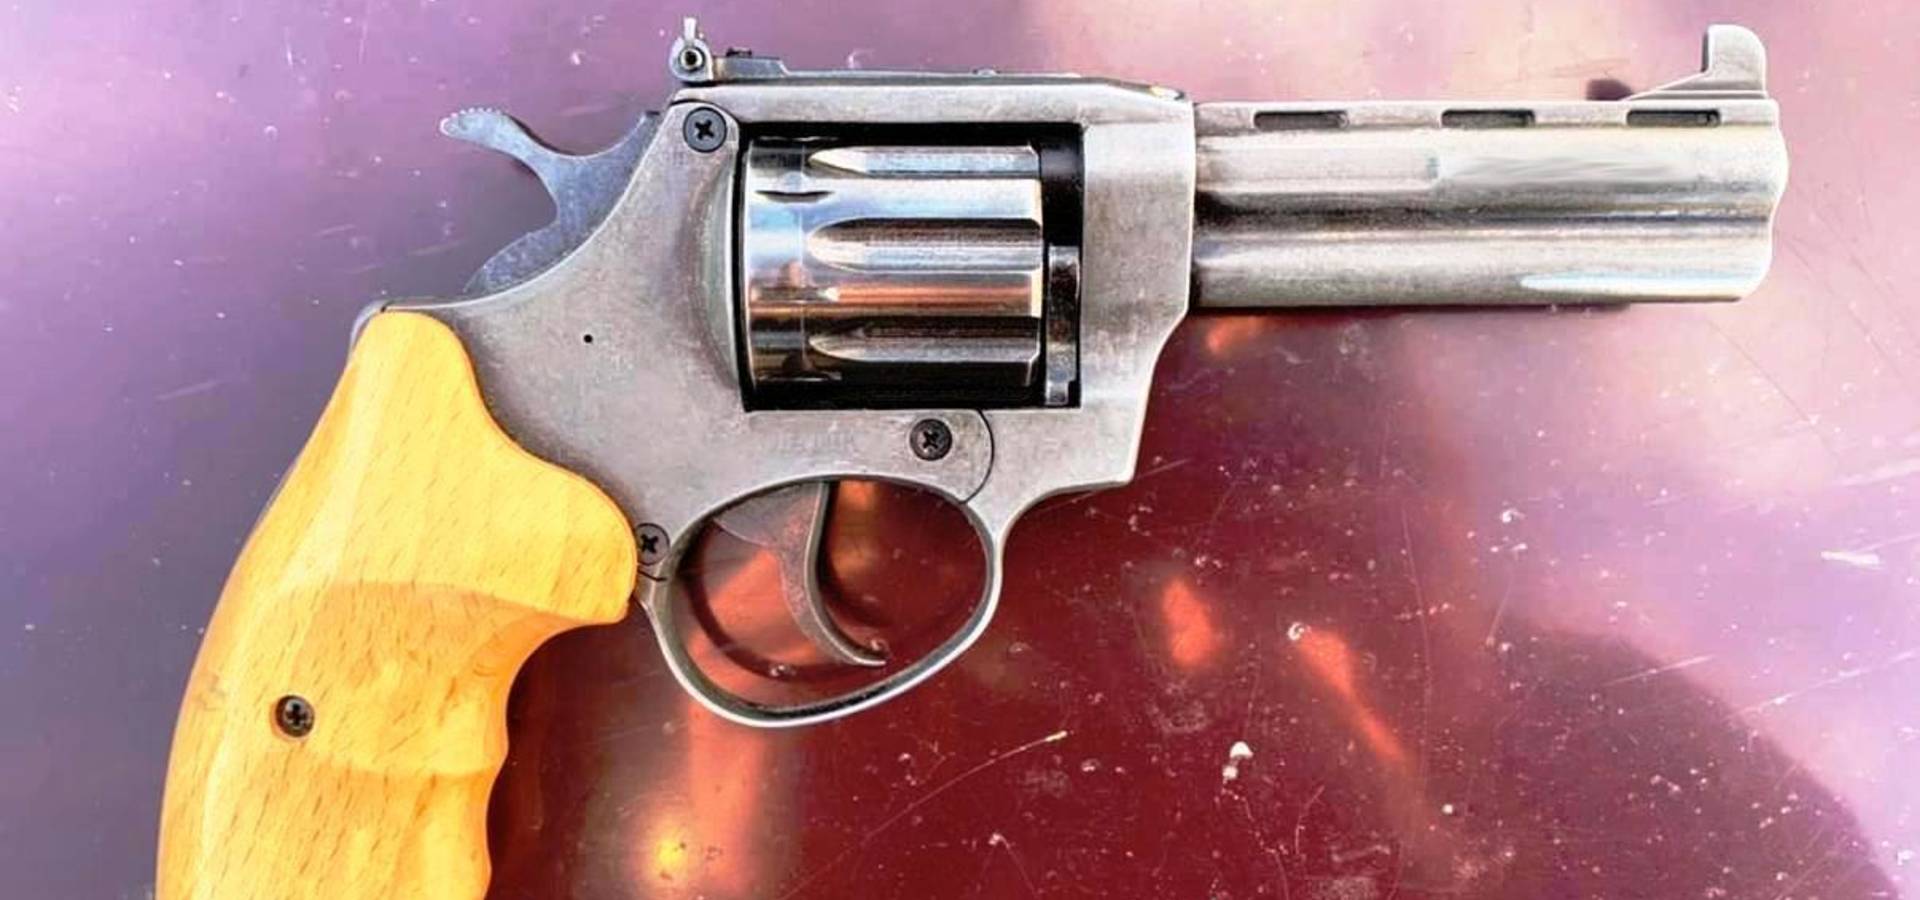 У Хмільницькому районі озброєний револьвером чоловік погрожував продавчині